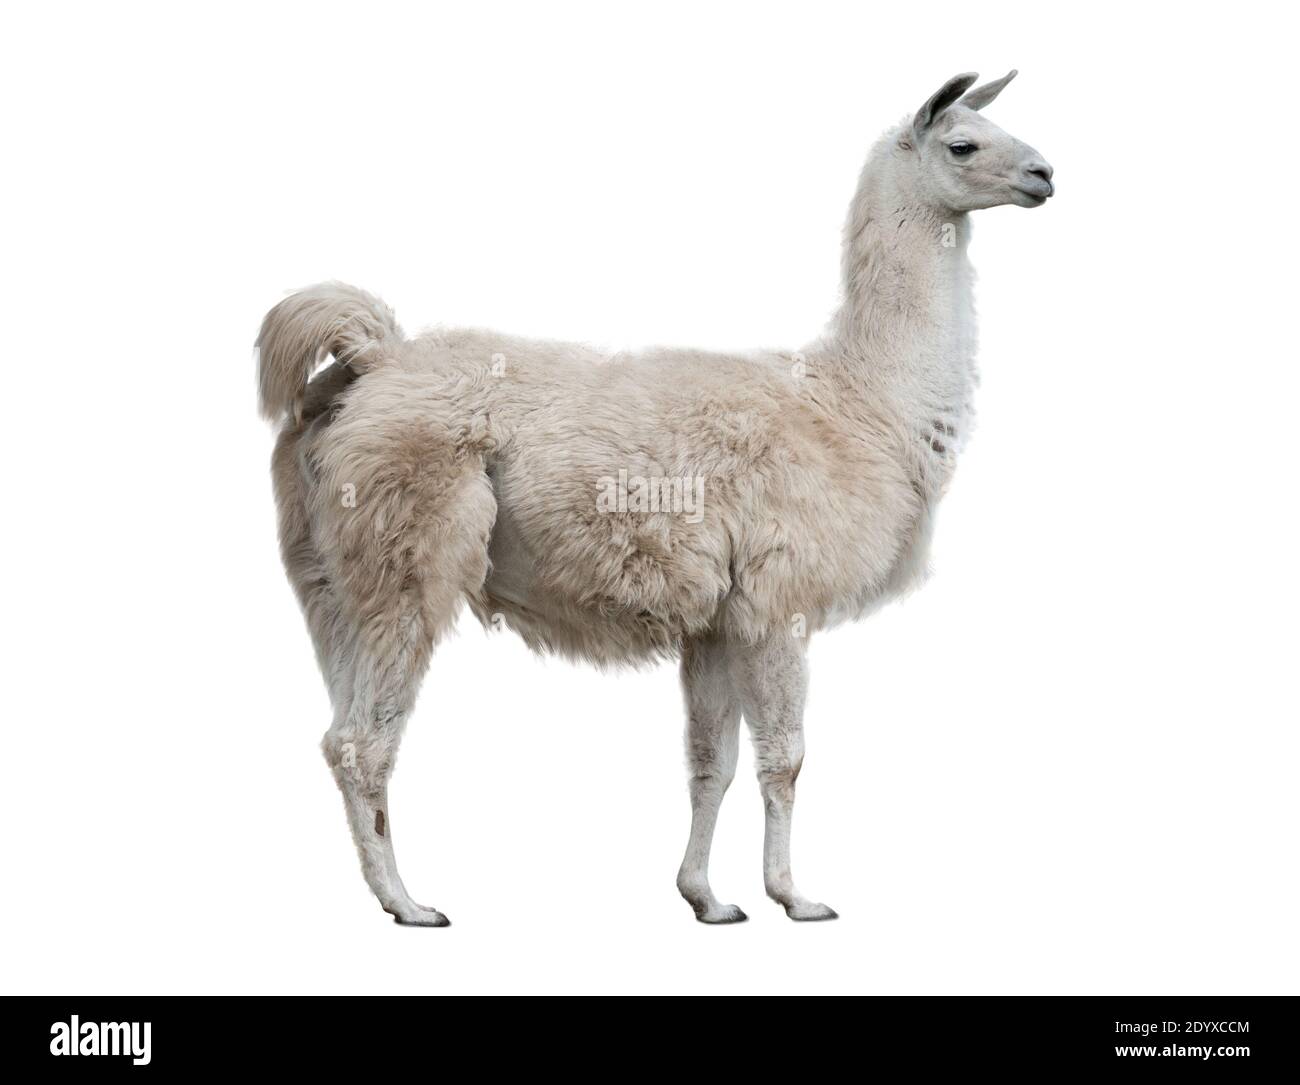 Erwachsene lama außen isoliert auf einem weißen Hintergrund Stockfoto